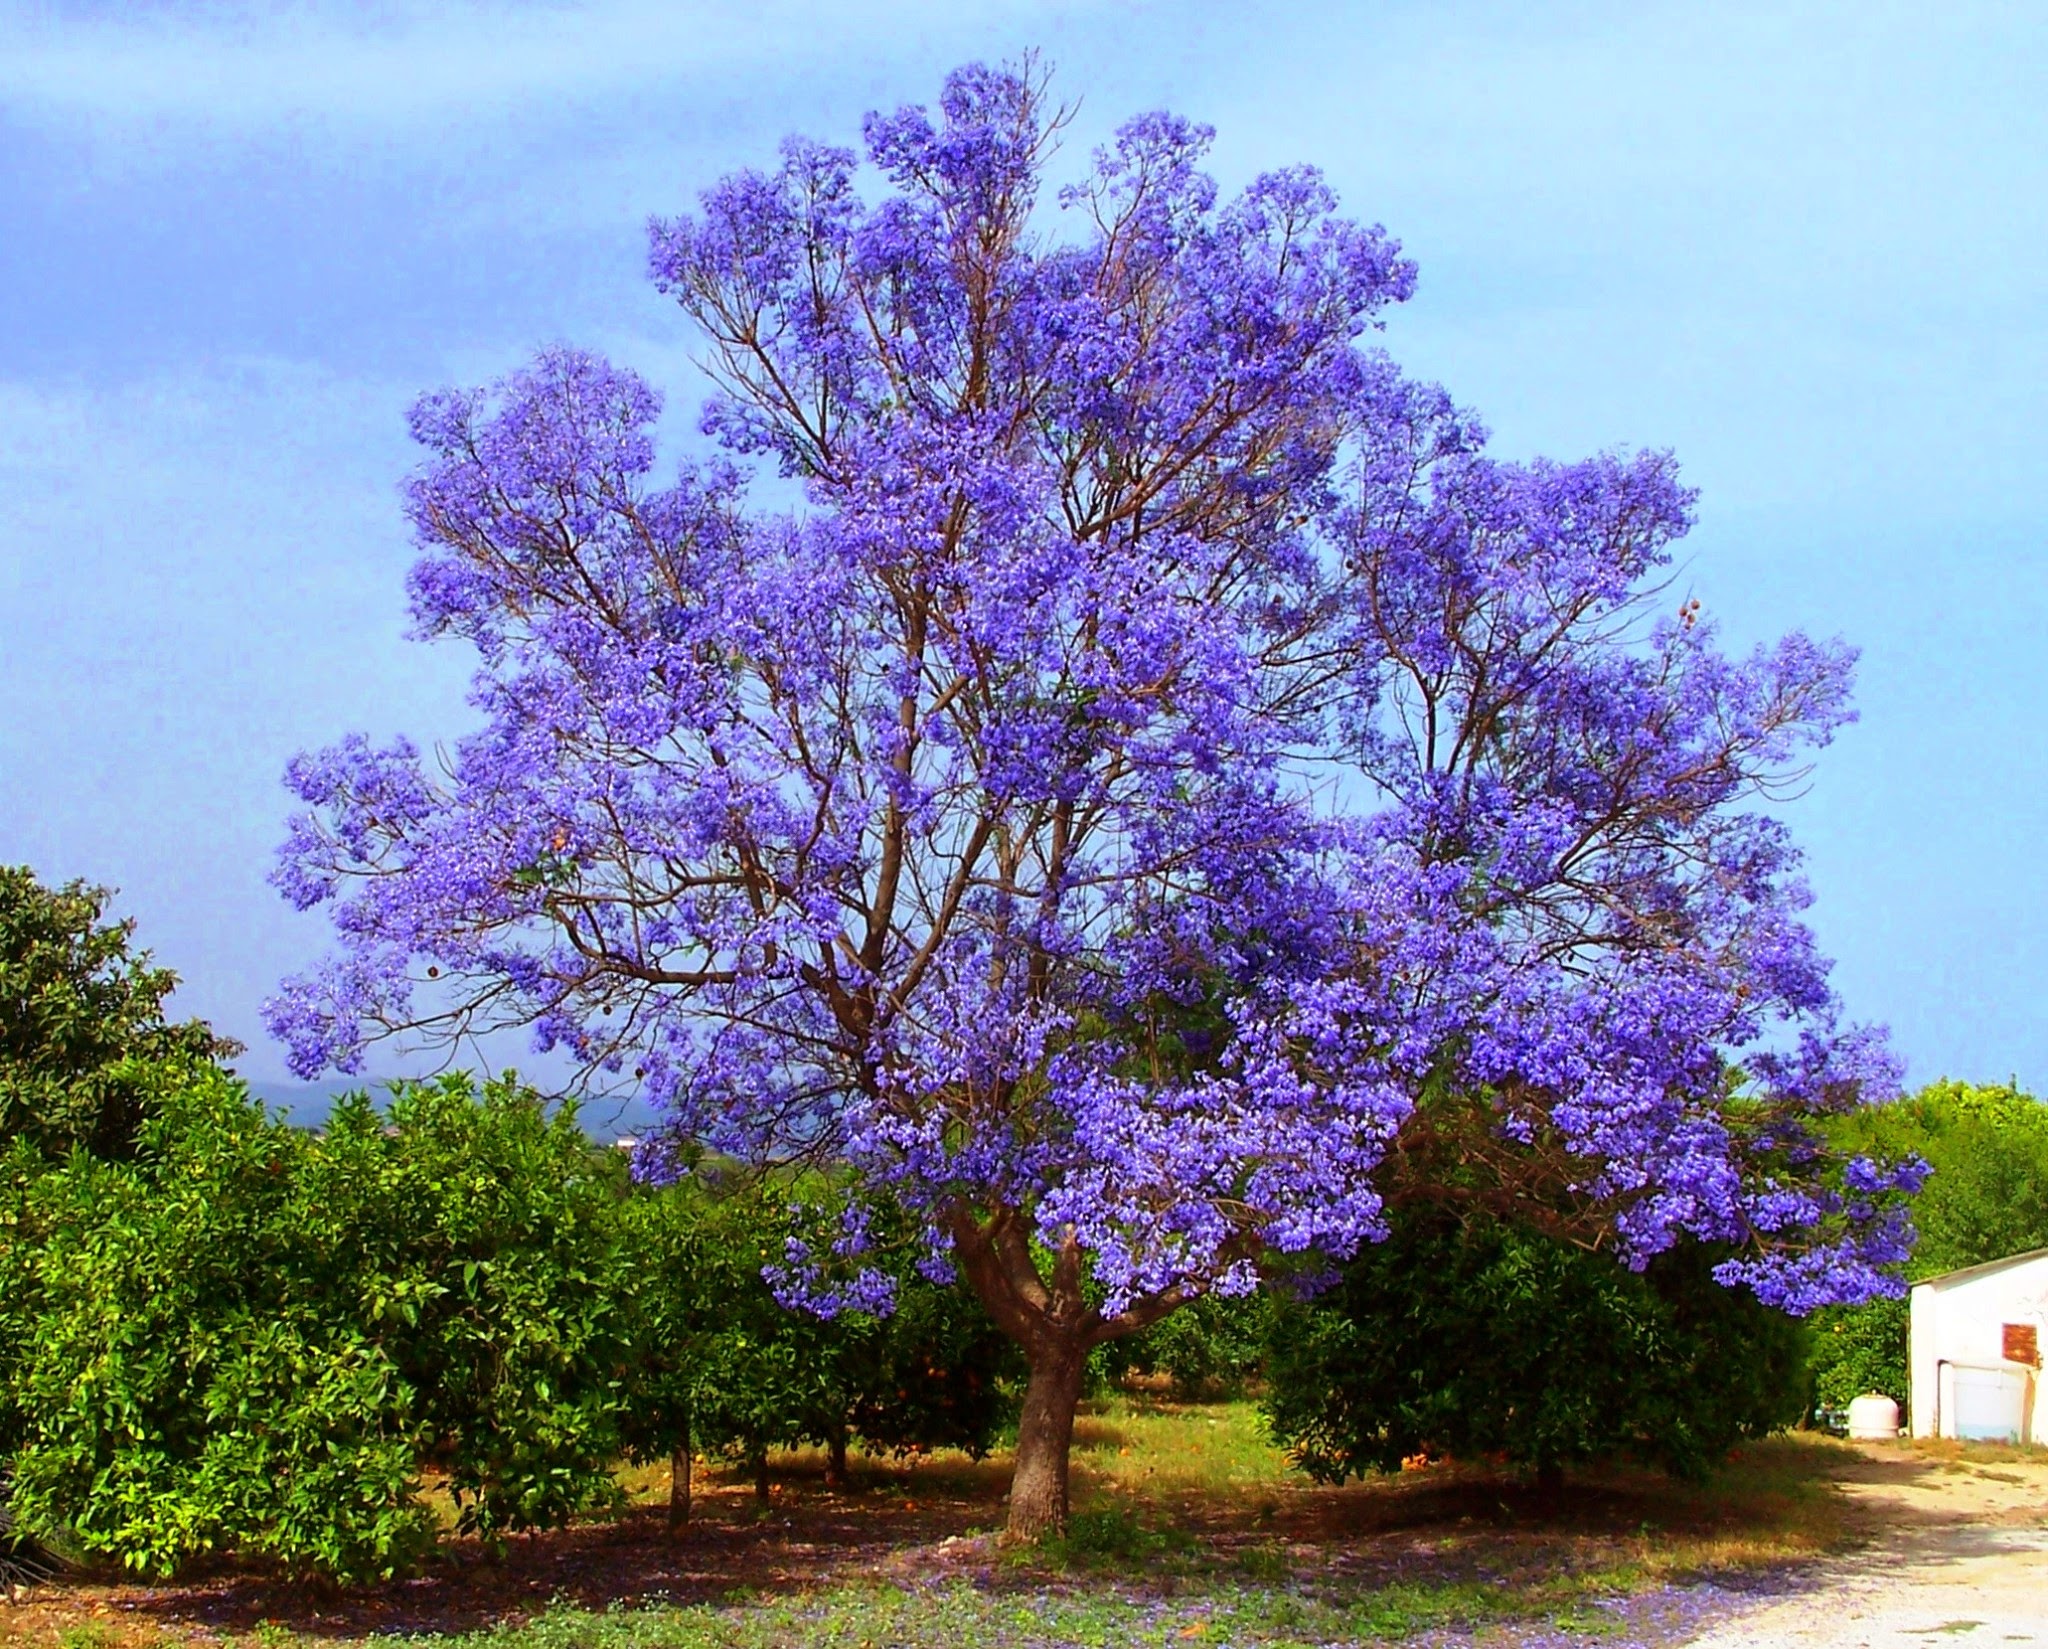 Павловния дерево фото с цветами и с листьями